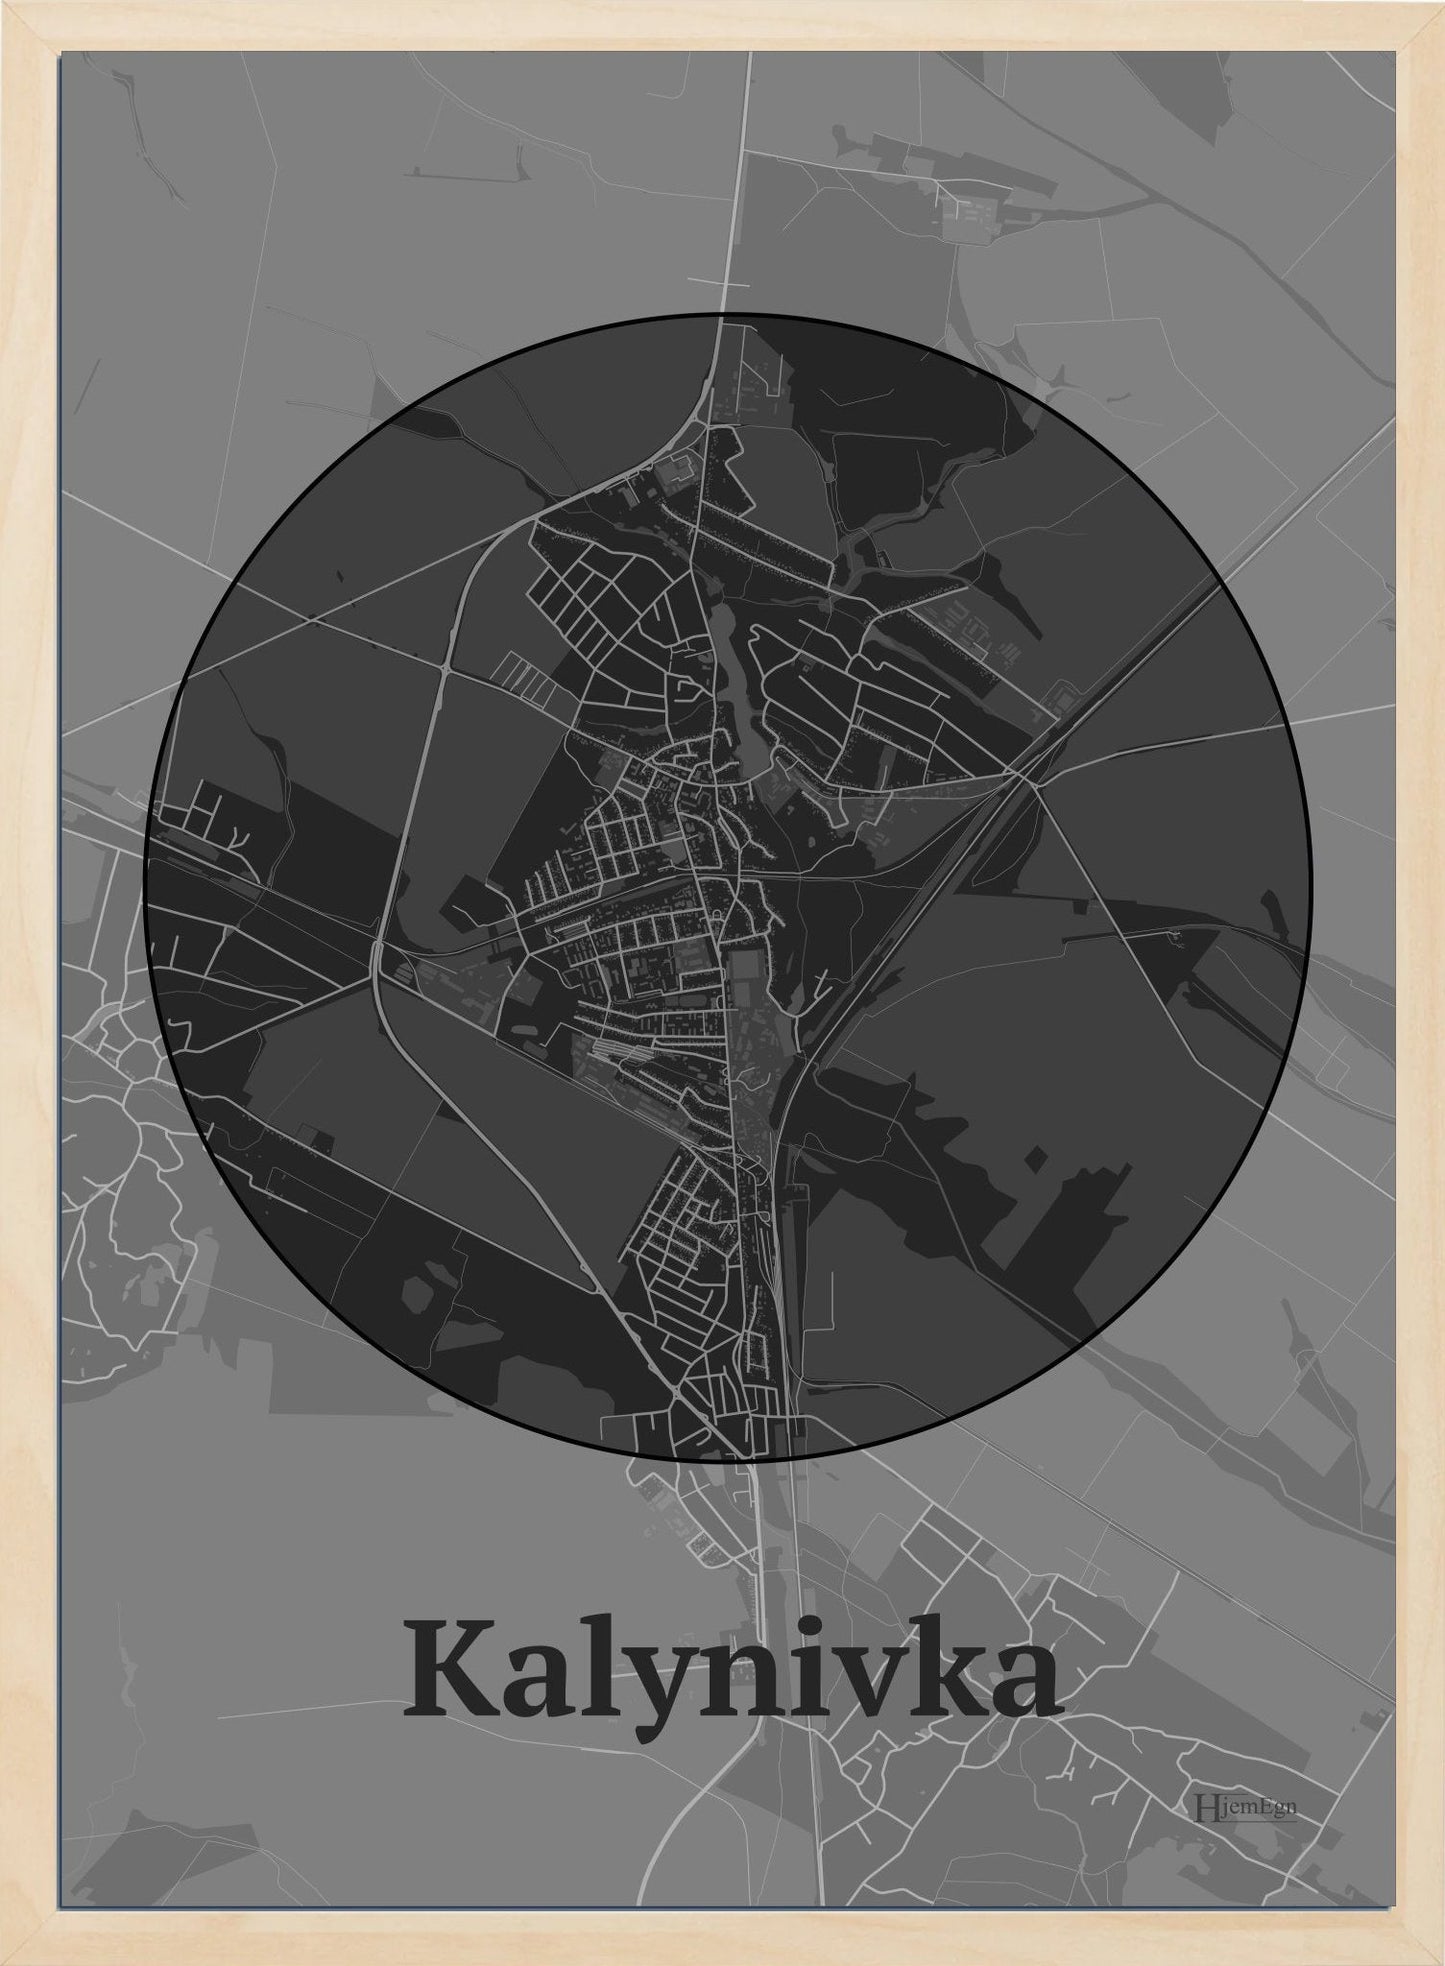 Kalynivka plakat i farve mørk grå og HjemEgn.dk design centrum. Design bykort for Kalynivka